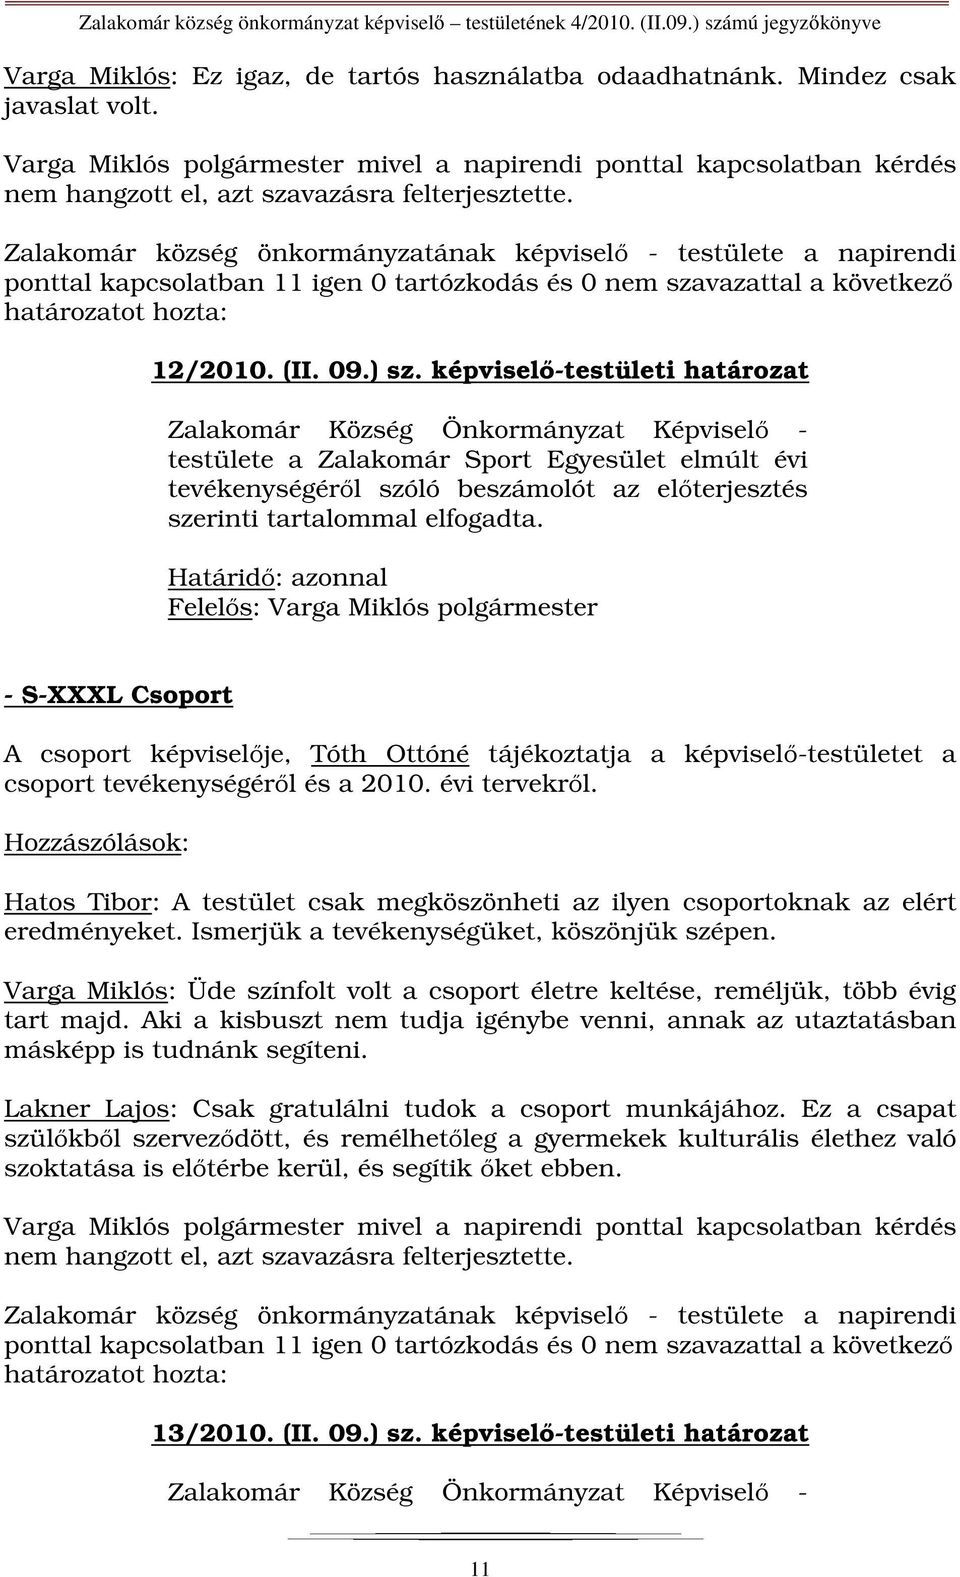 Zalakomár község önkormányzatának képviselő - testülete a napirendi ponttal kapcsolatban 11 igen 0 tartózkodás és 0 nem szavazattal a következő 12/2010. (II. 09.) sz.